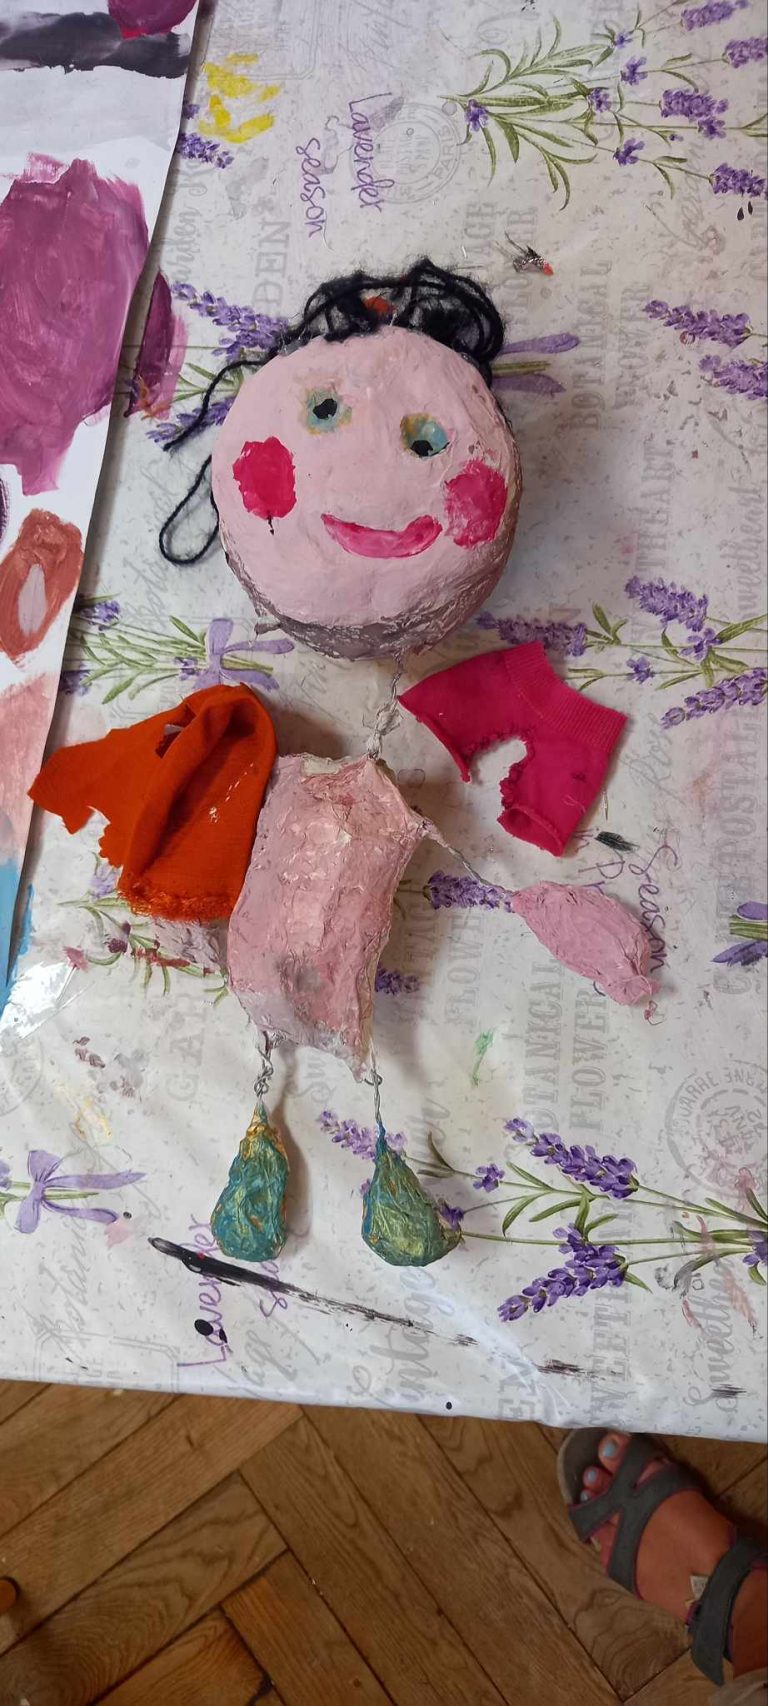 marionnette en papier maché et fil de fer, peinture colorée. Créée par un enfant stage d'arts plastiques.